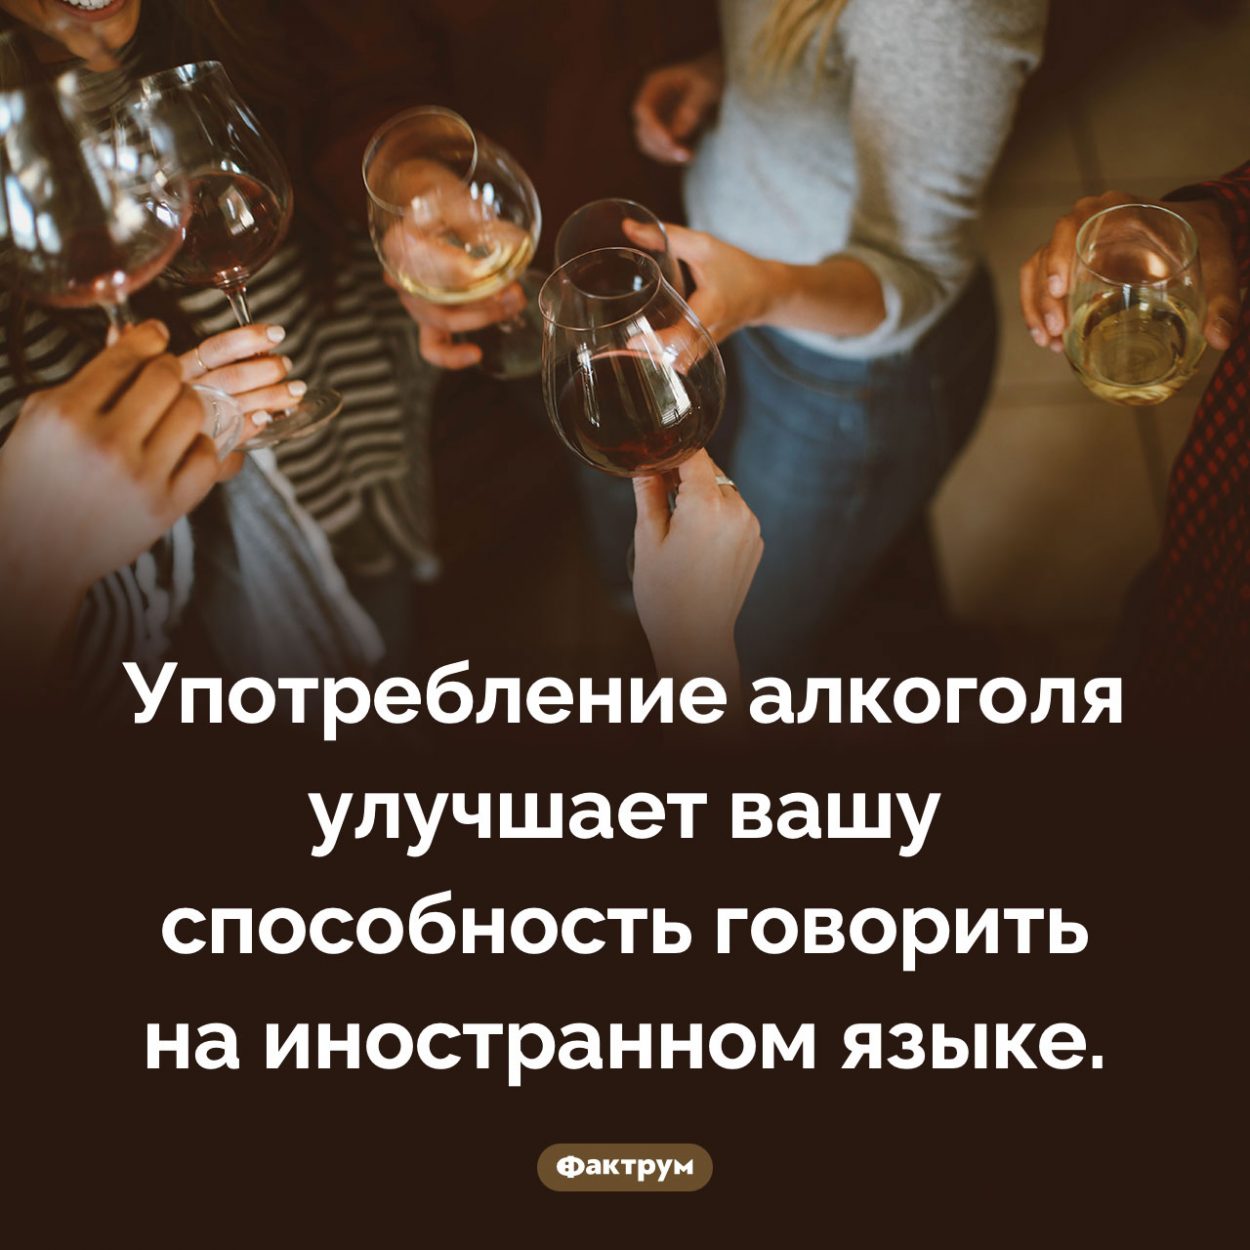 Алкоголь и иностранные языки. Употребление алкоголя улучшает вашу способность говорить на иностранном языке.